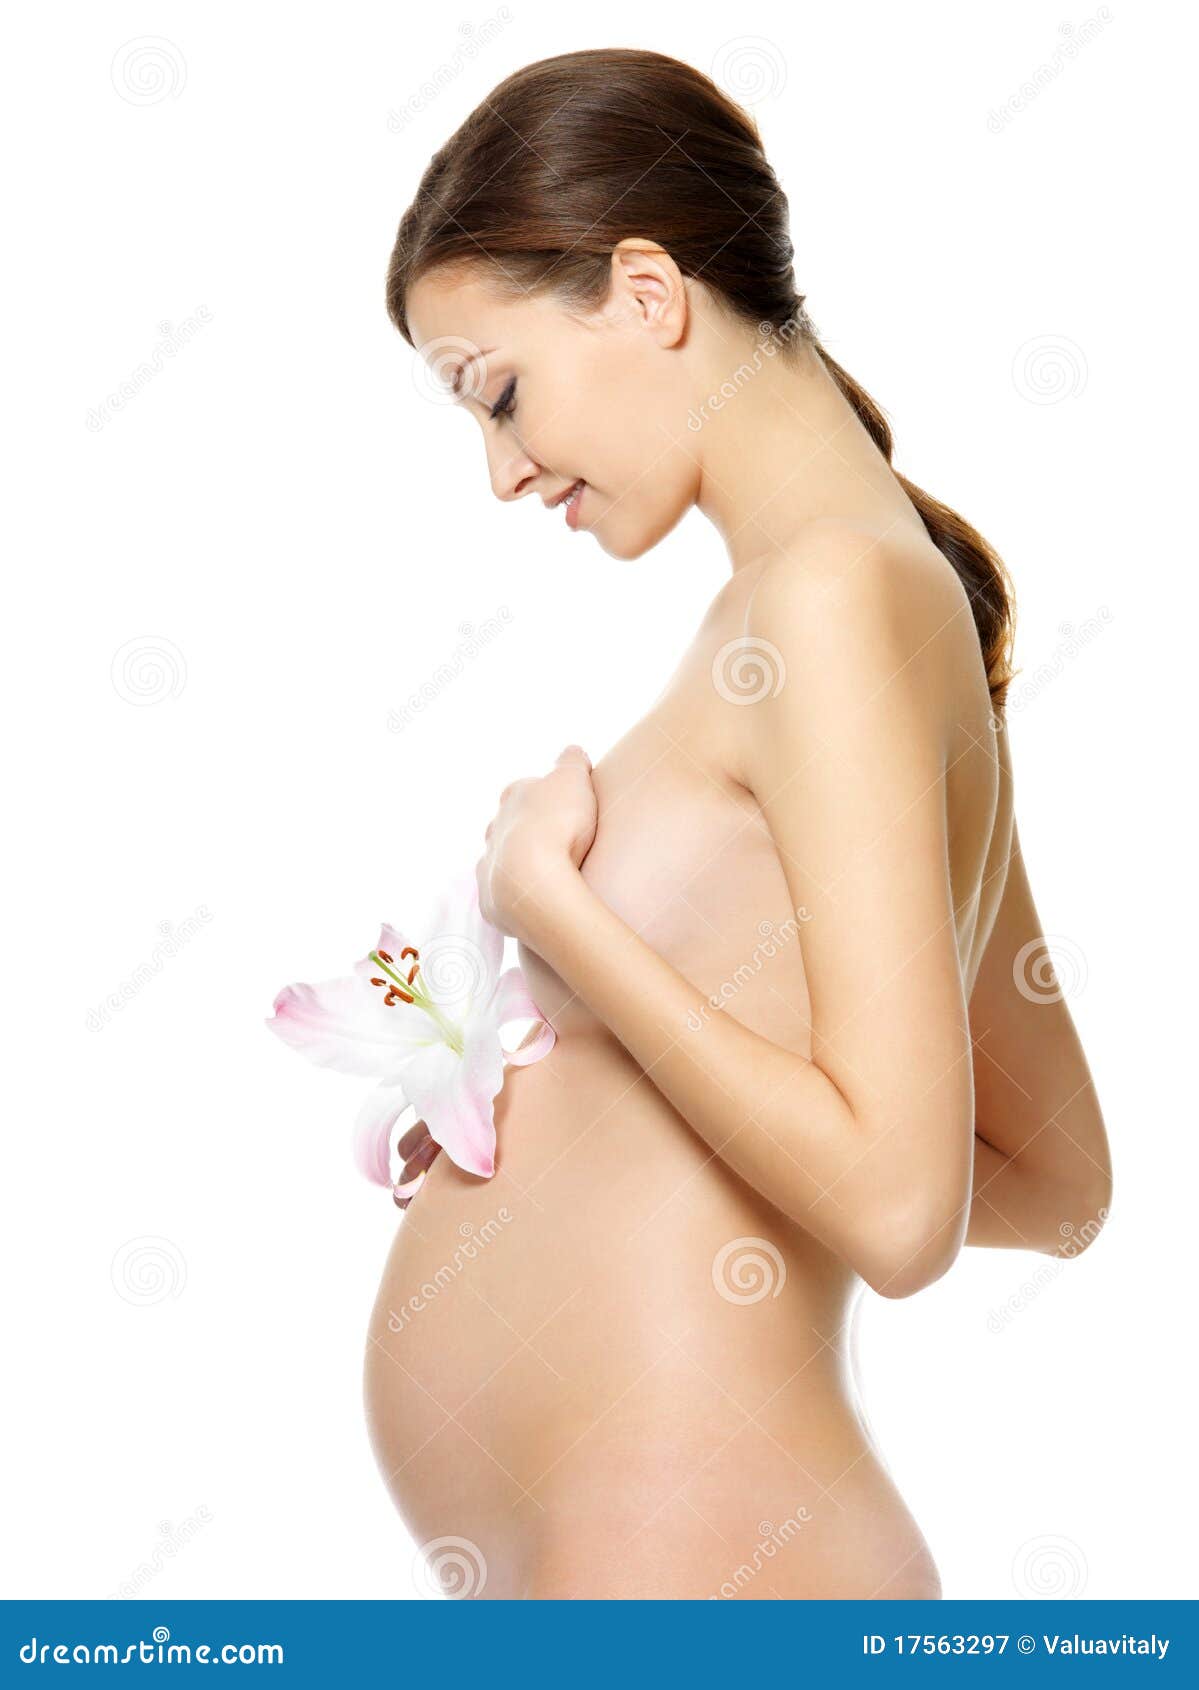 Nacket Pregnant Women 34